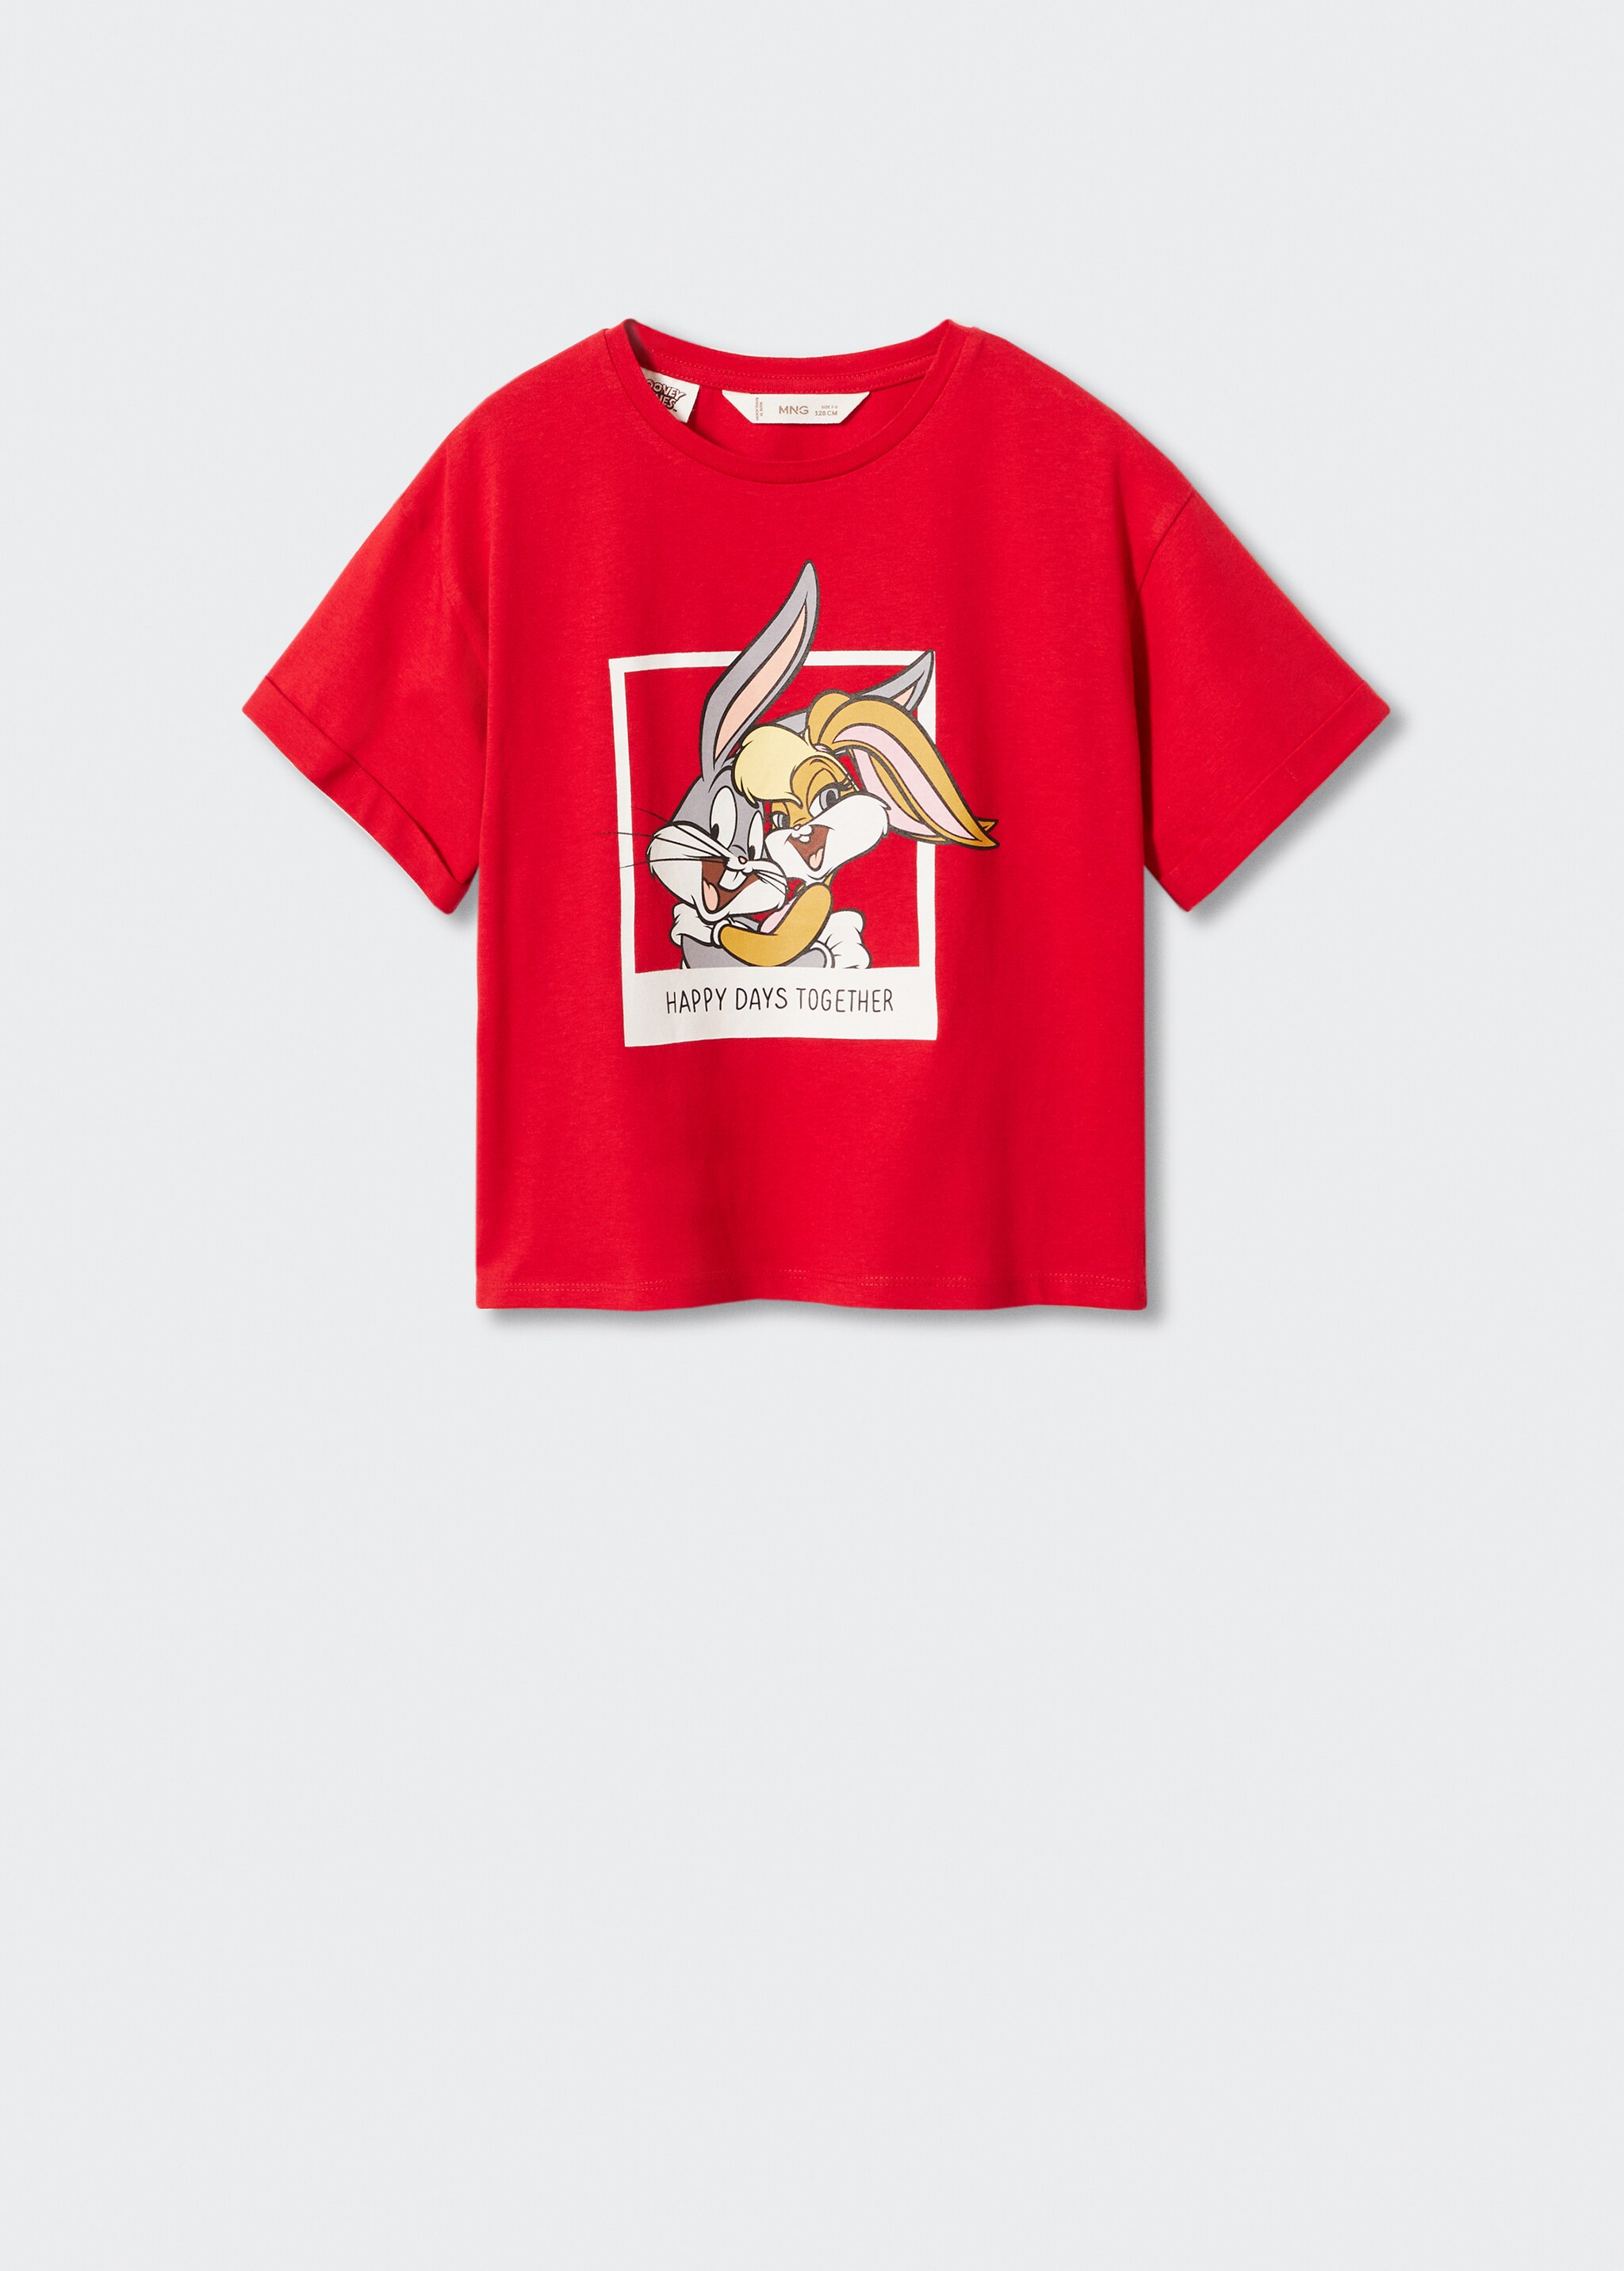 Camiseta Bugs Bunny - Artículo sin modelo